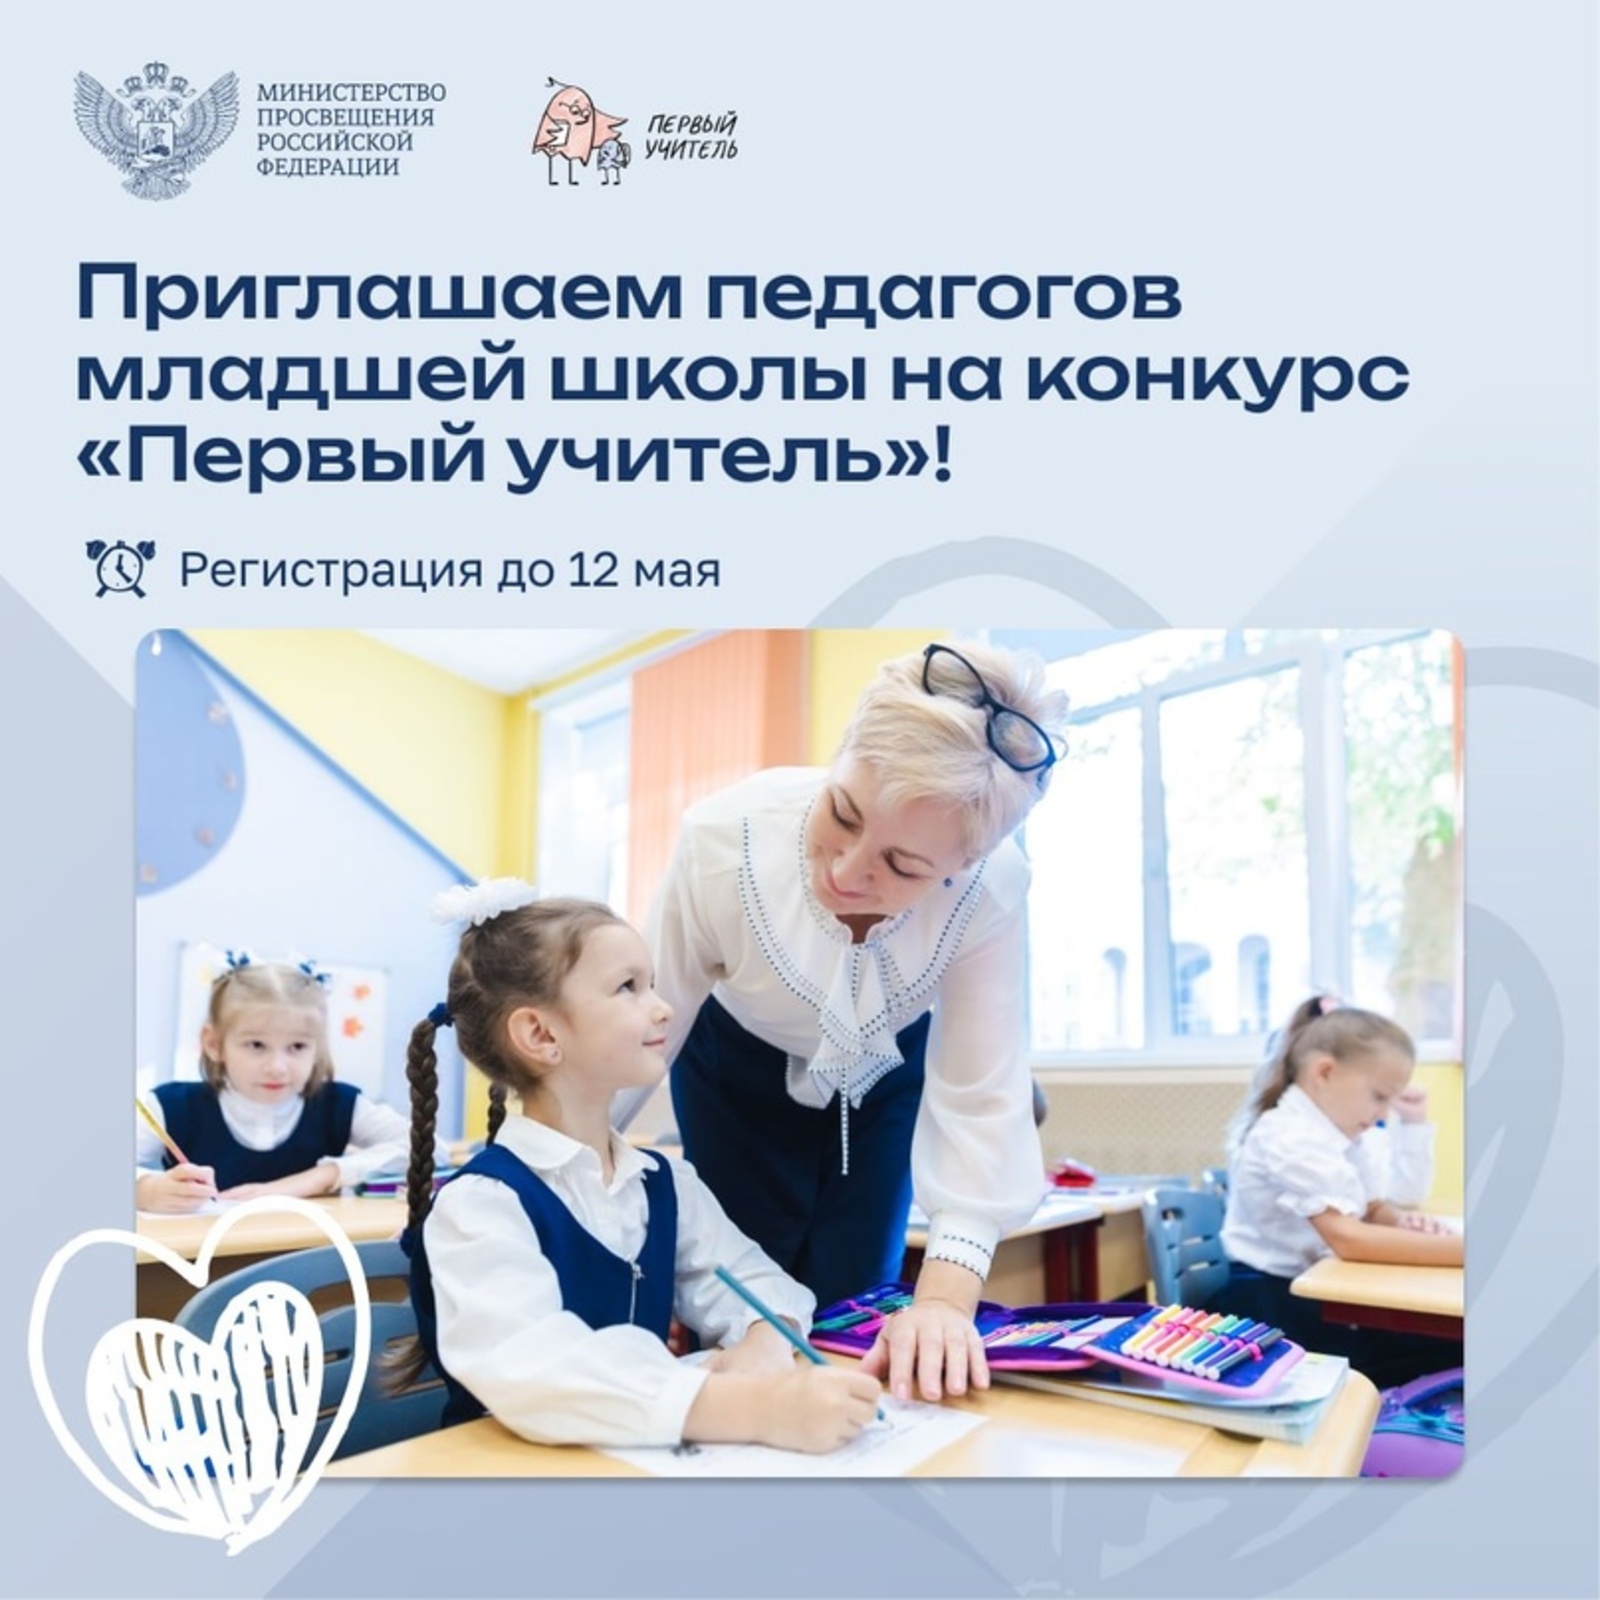 Всероссийский профессиональный конкурс «Первый учитель»